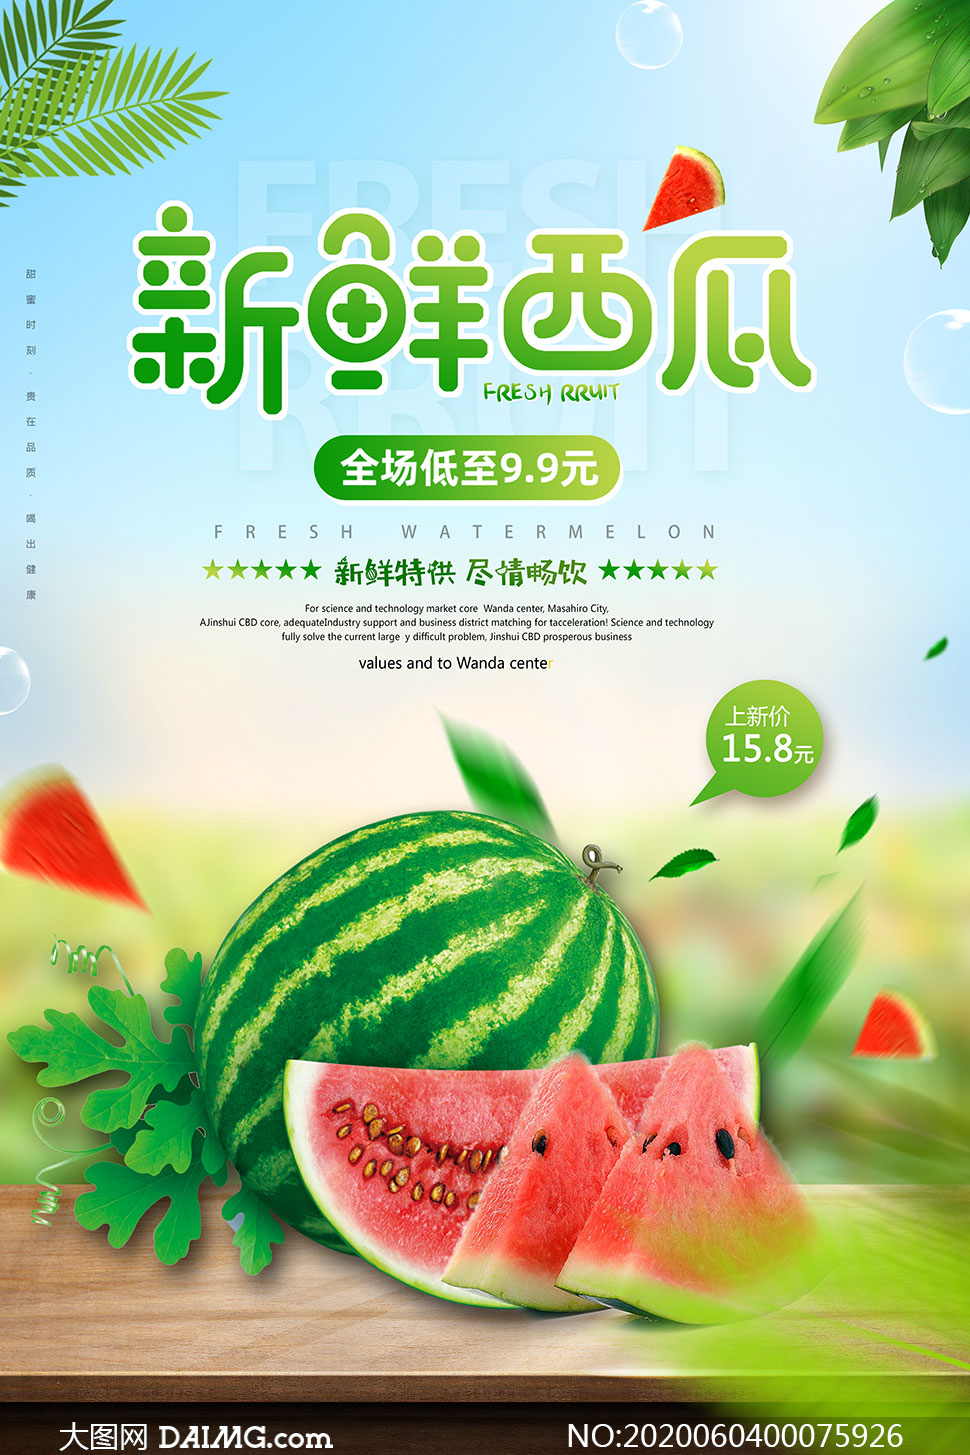 水果店新鲜西瓜促销海报设计psd素材